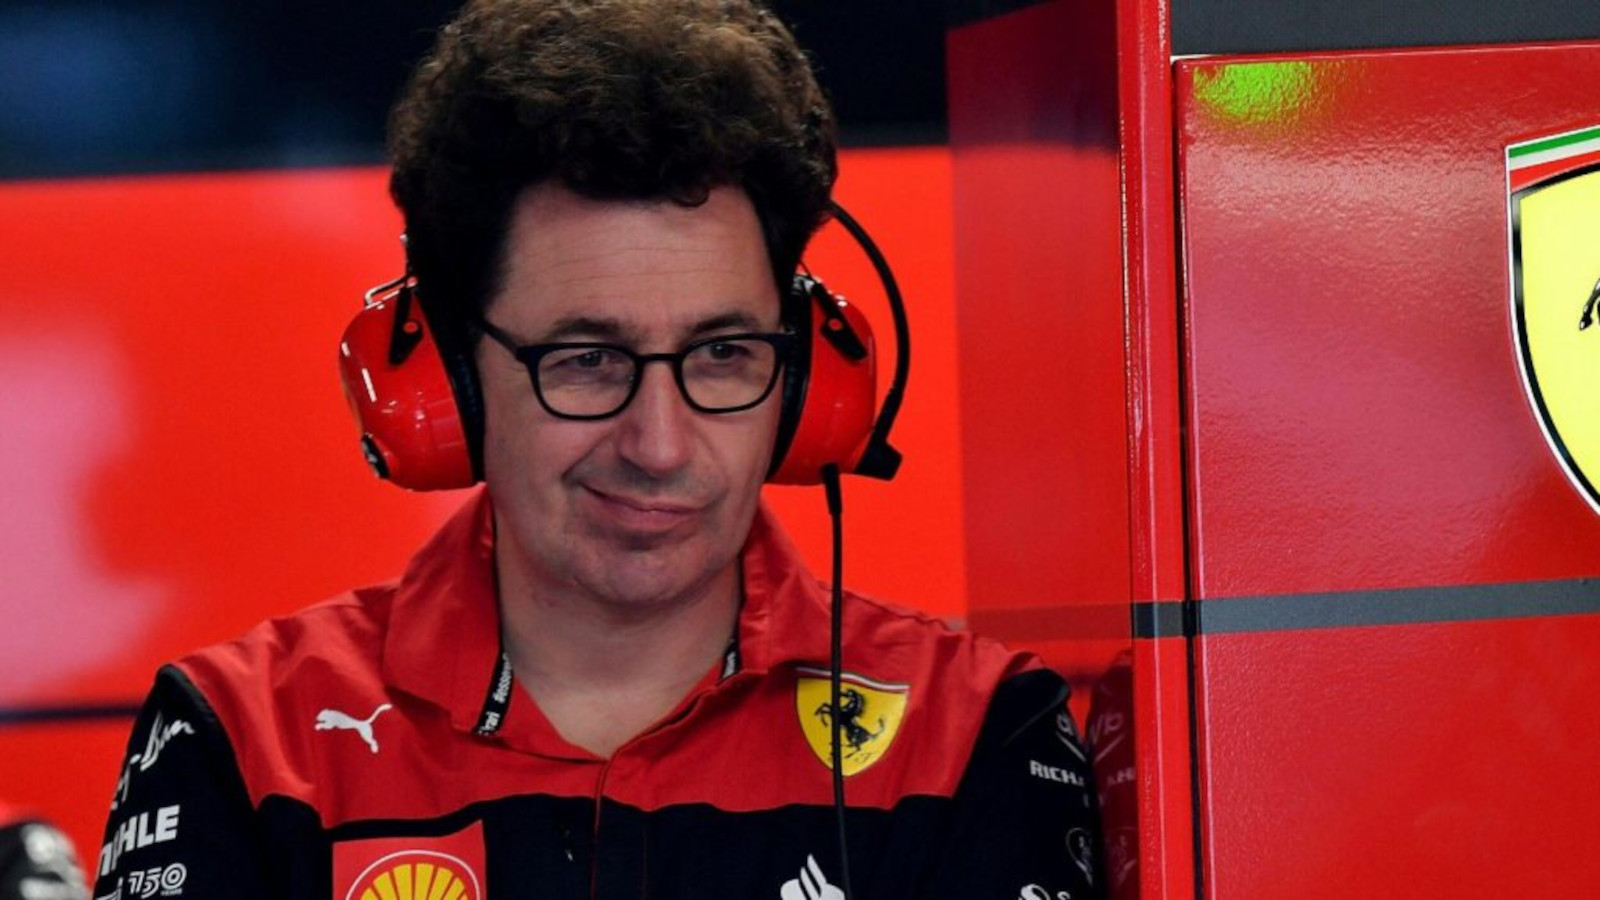 法拉利车队负责人马蒂亚·比诺托在车库里，戴着耳机，神情古怪。蒙特利尔，2022年6月